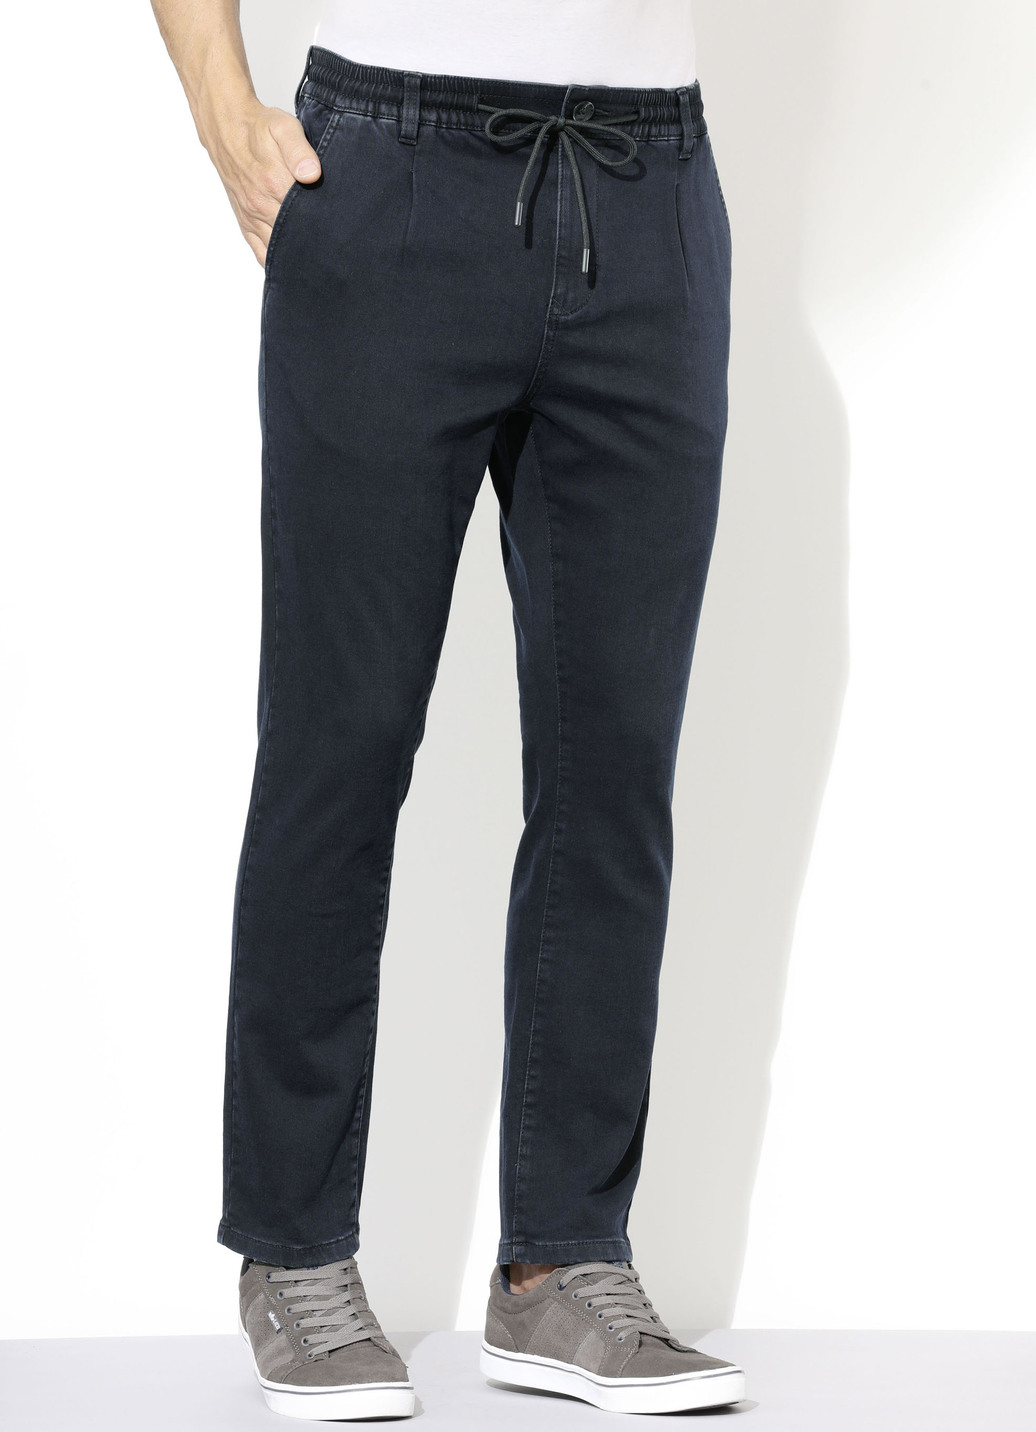 Superstretch-Jeans in 3 Farben, Dunkelblau, Größe 24 von DANNECKER